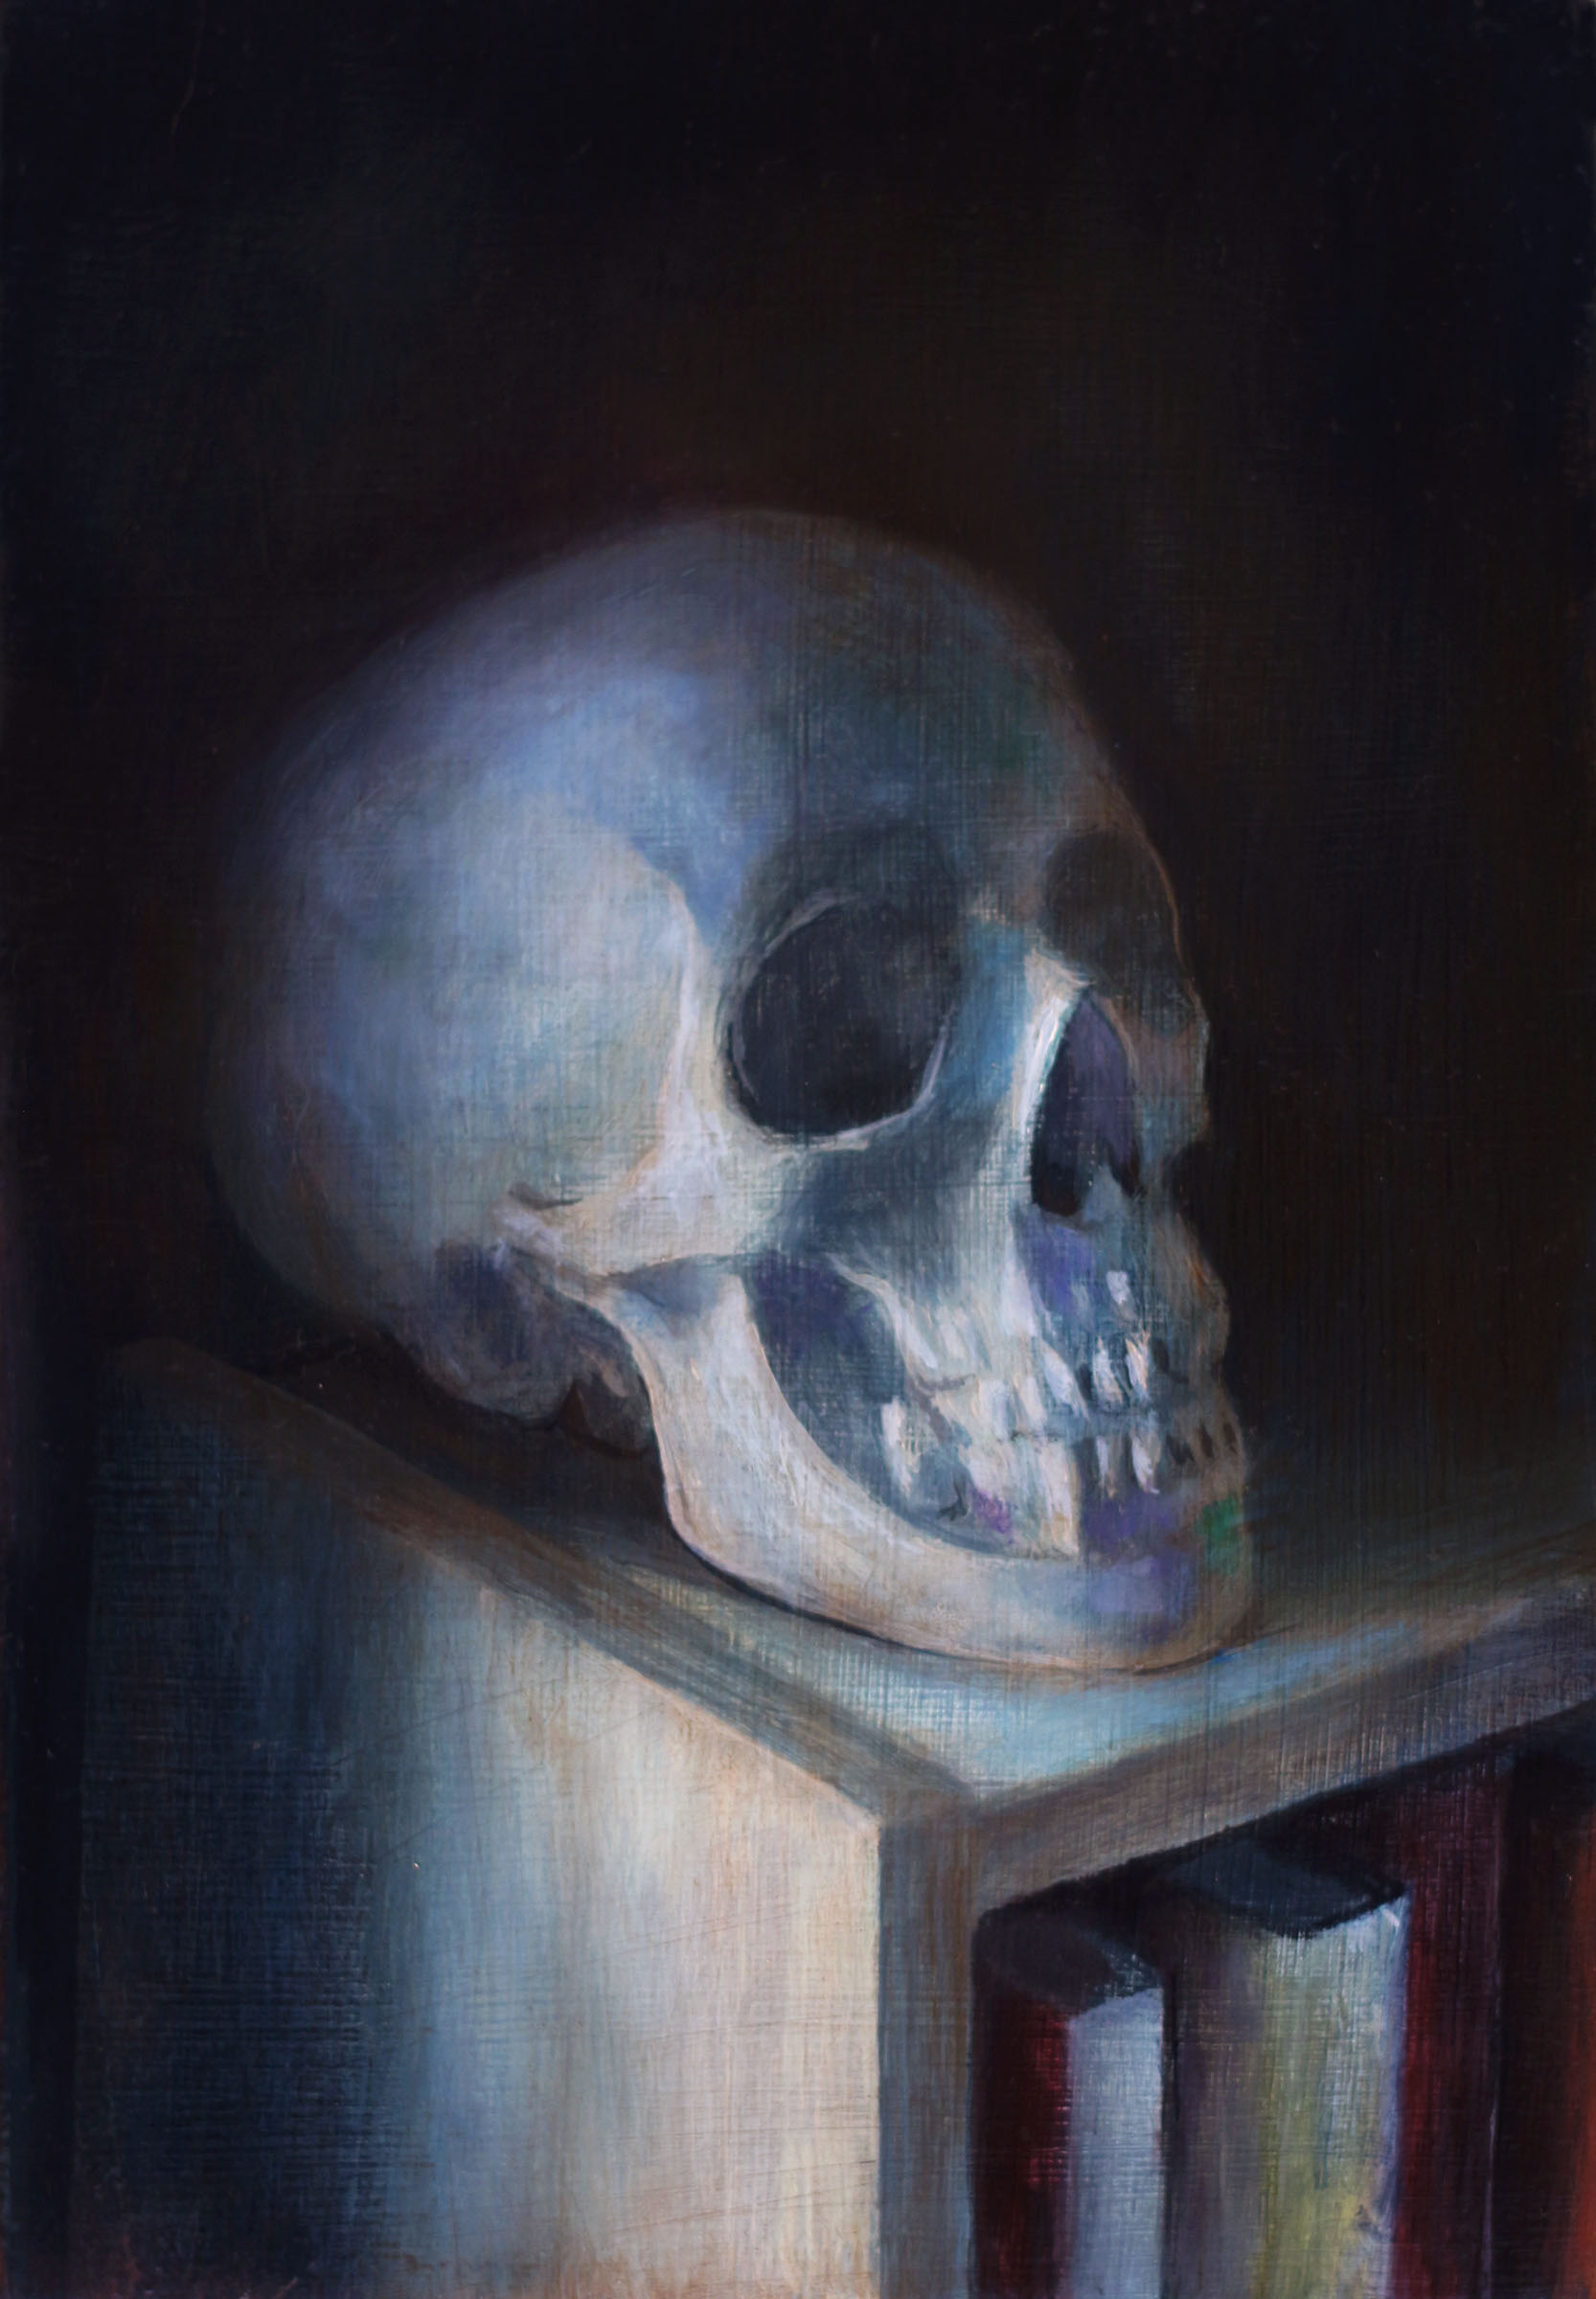   Skull   2017  Oil on linen  7 x 5 inches       